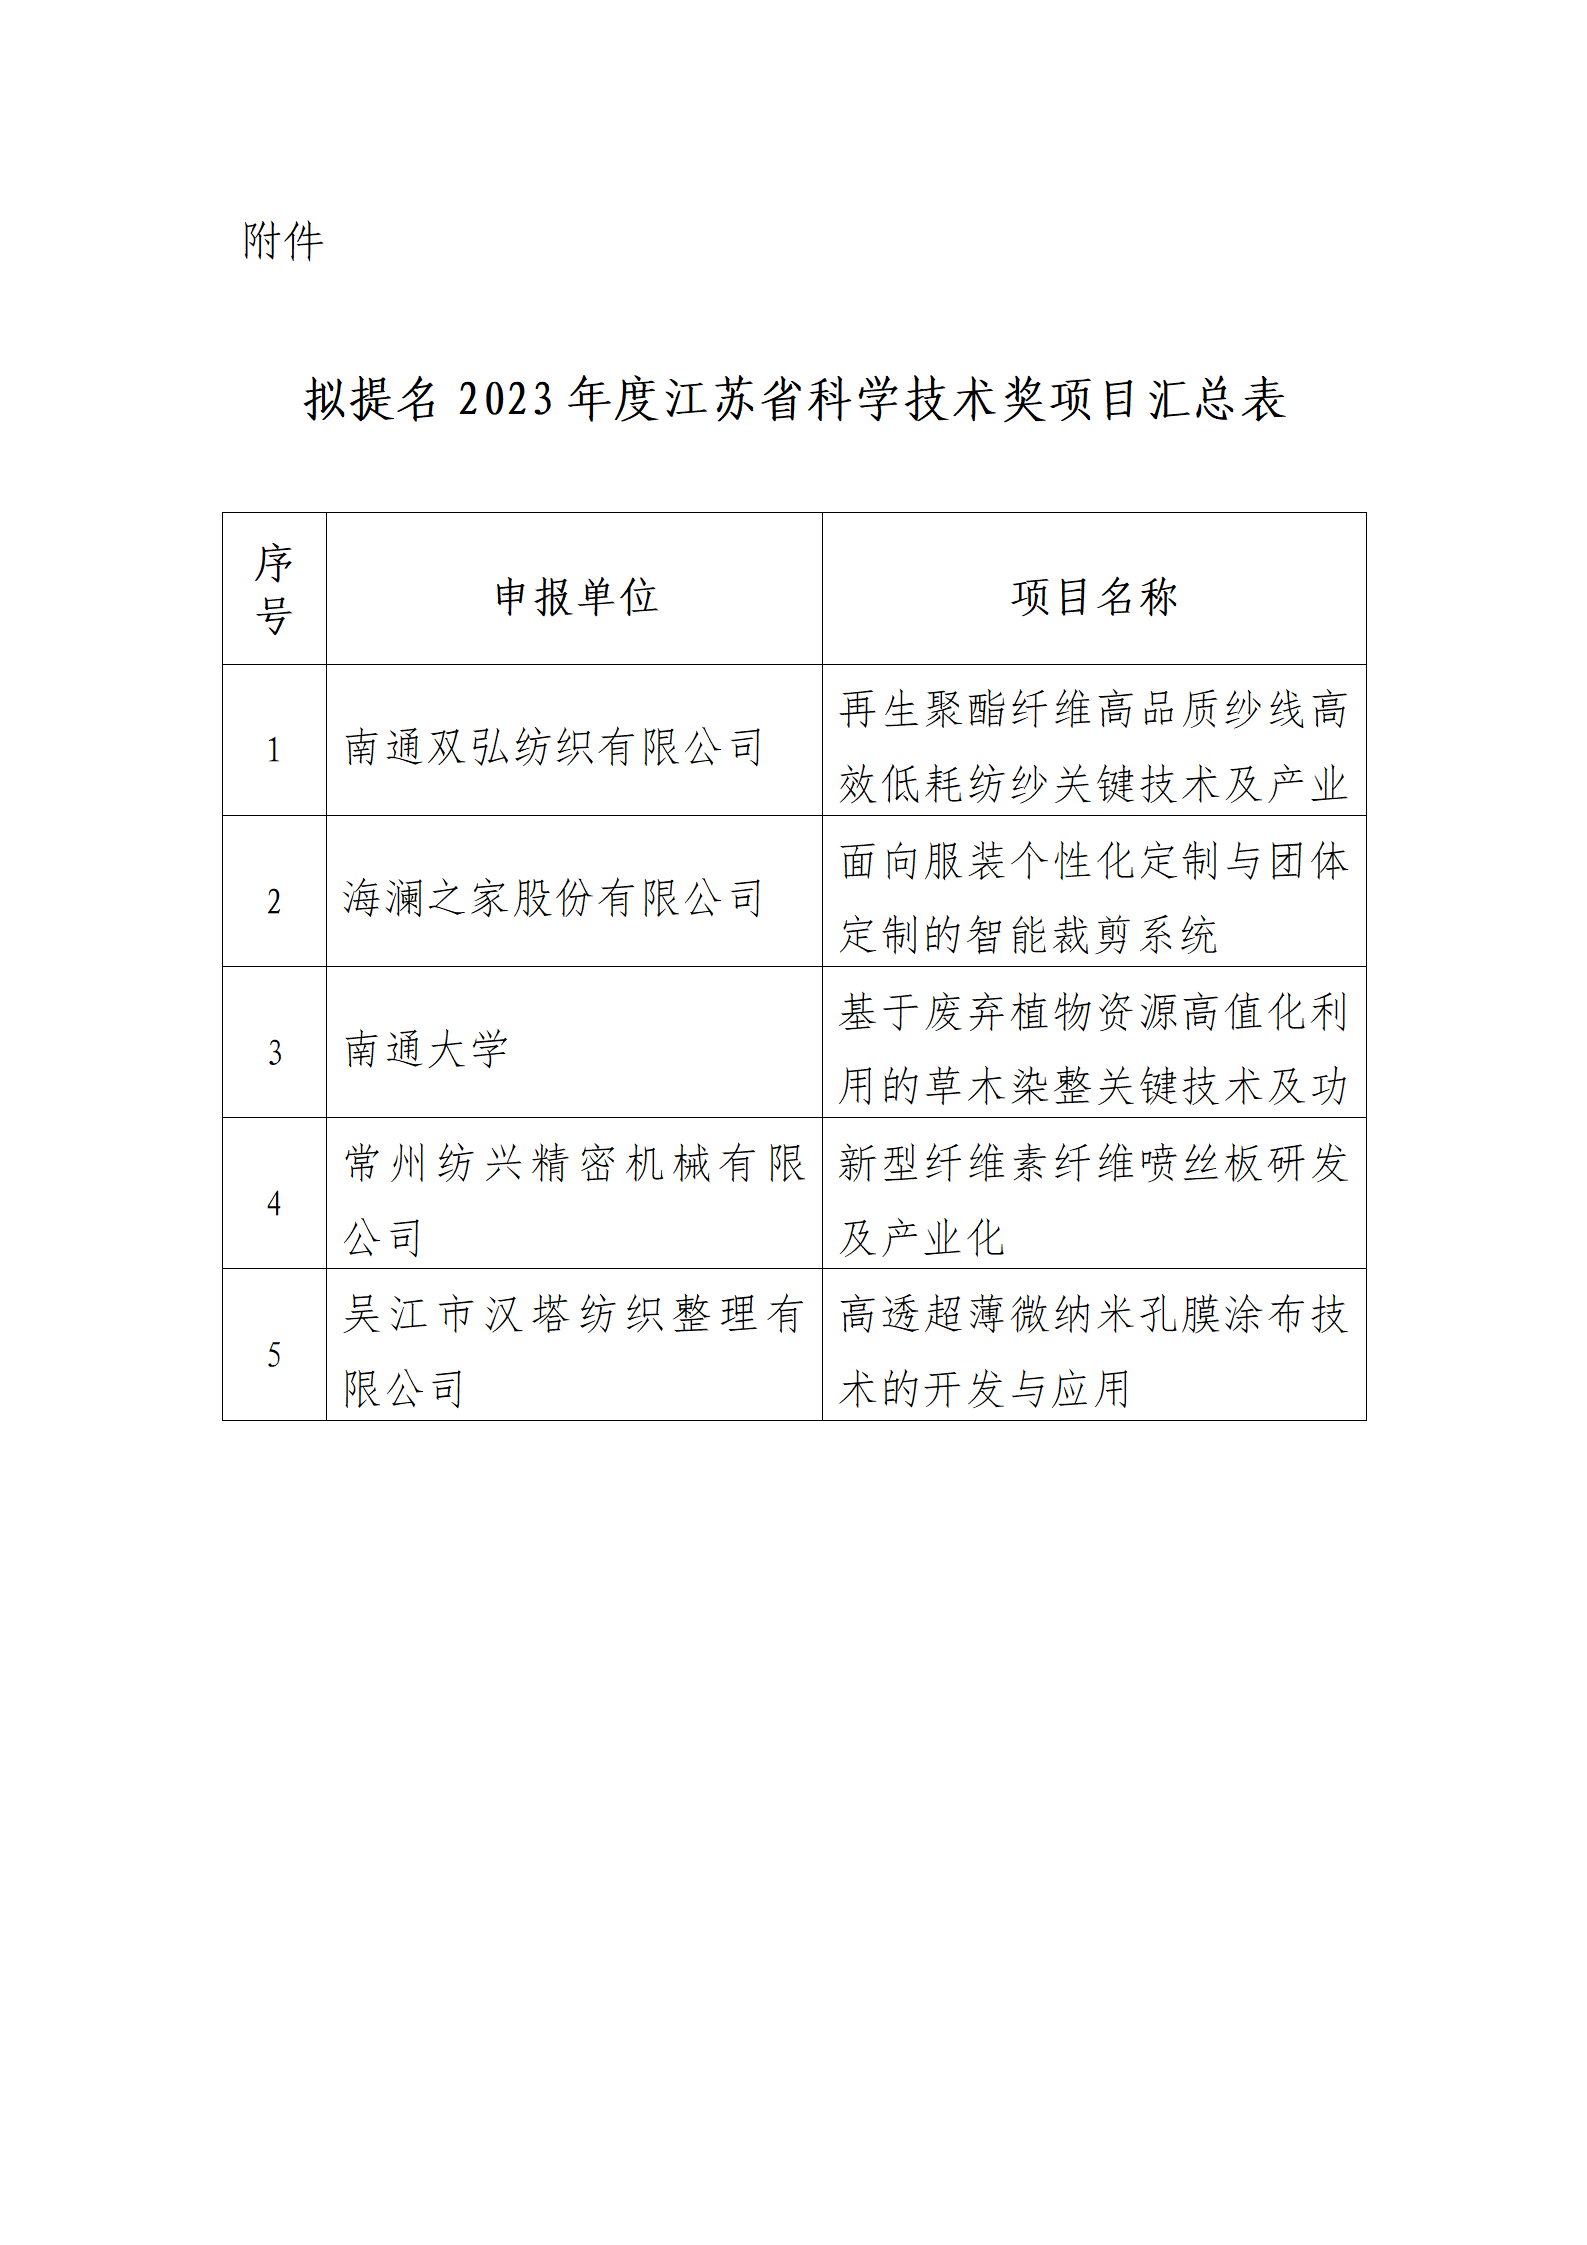 11号文：关于拟提名2023年度省科学技术奖项目的公示（带章）_02.png